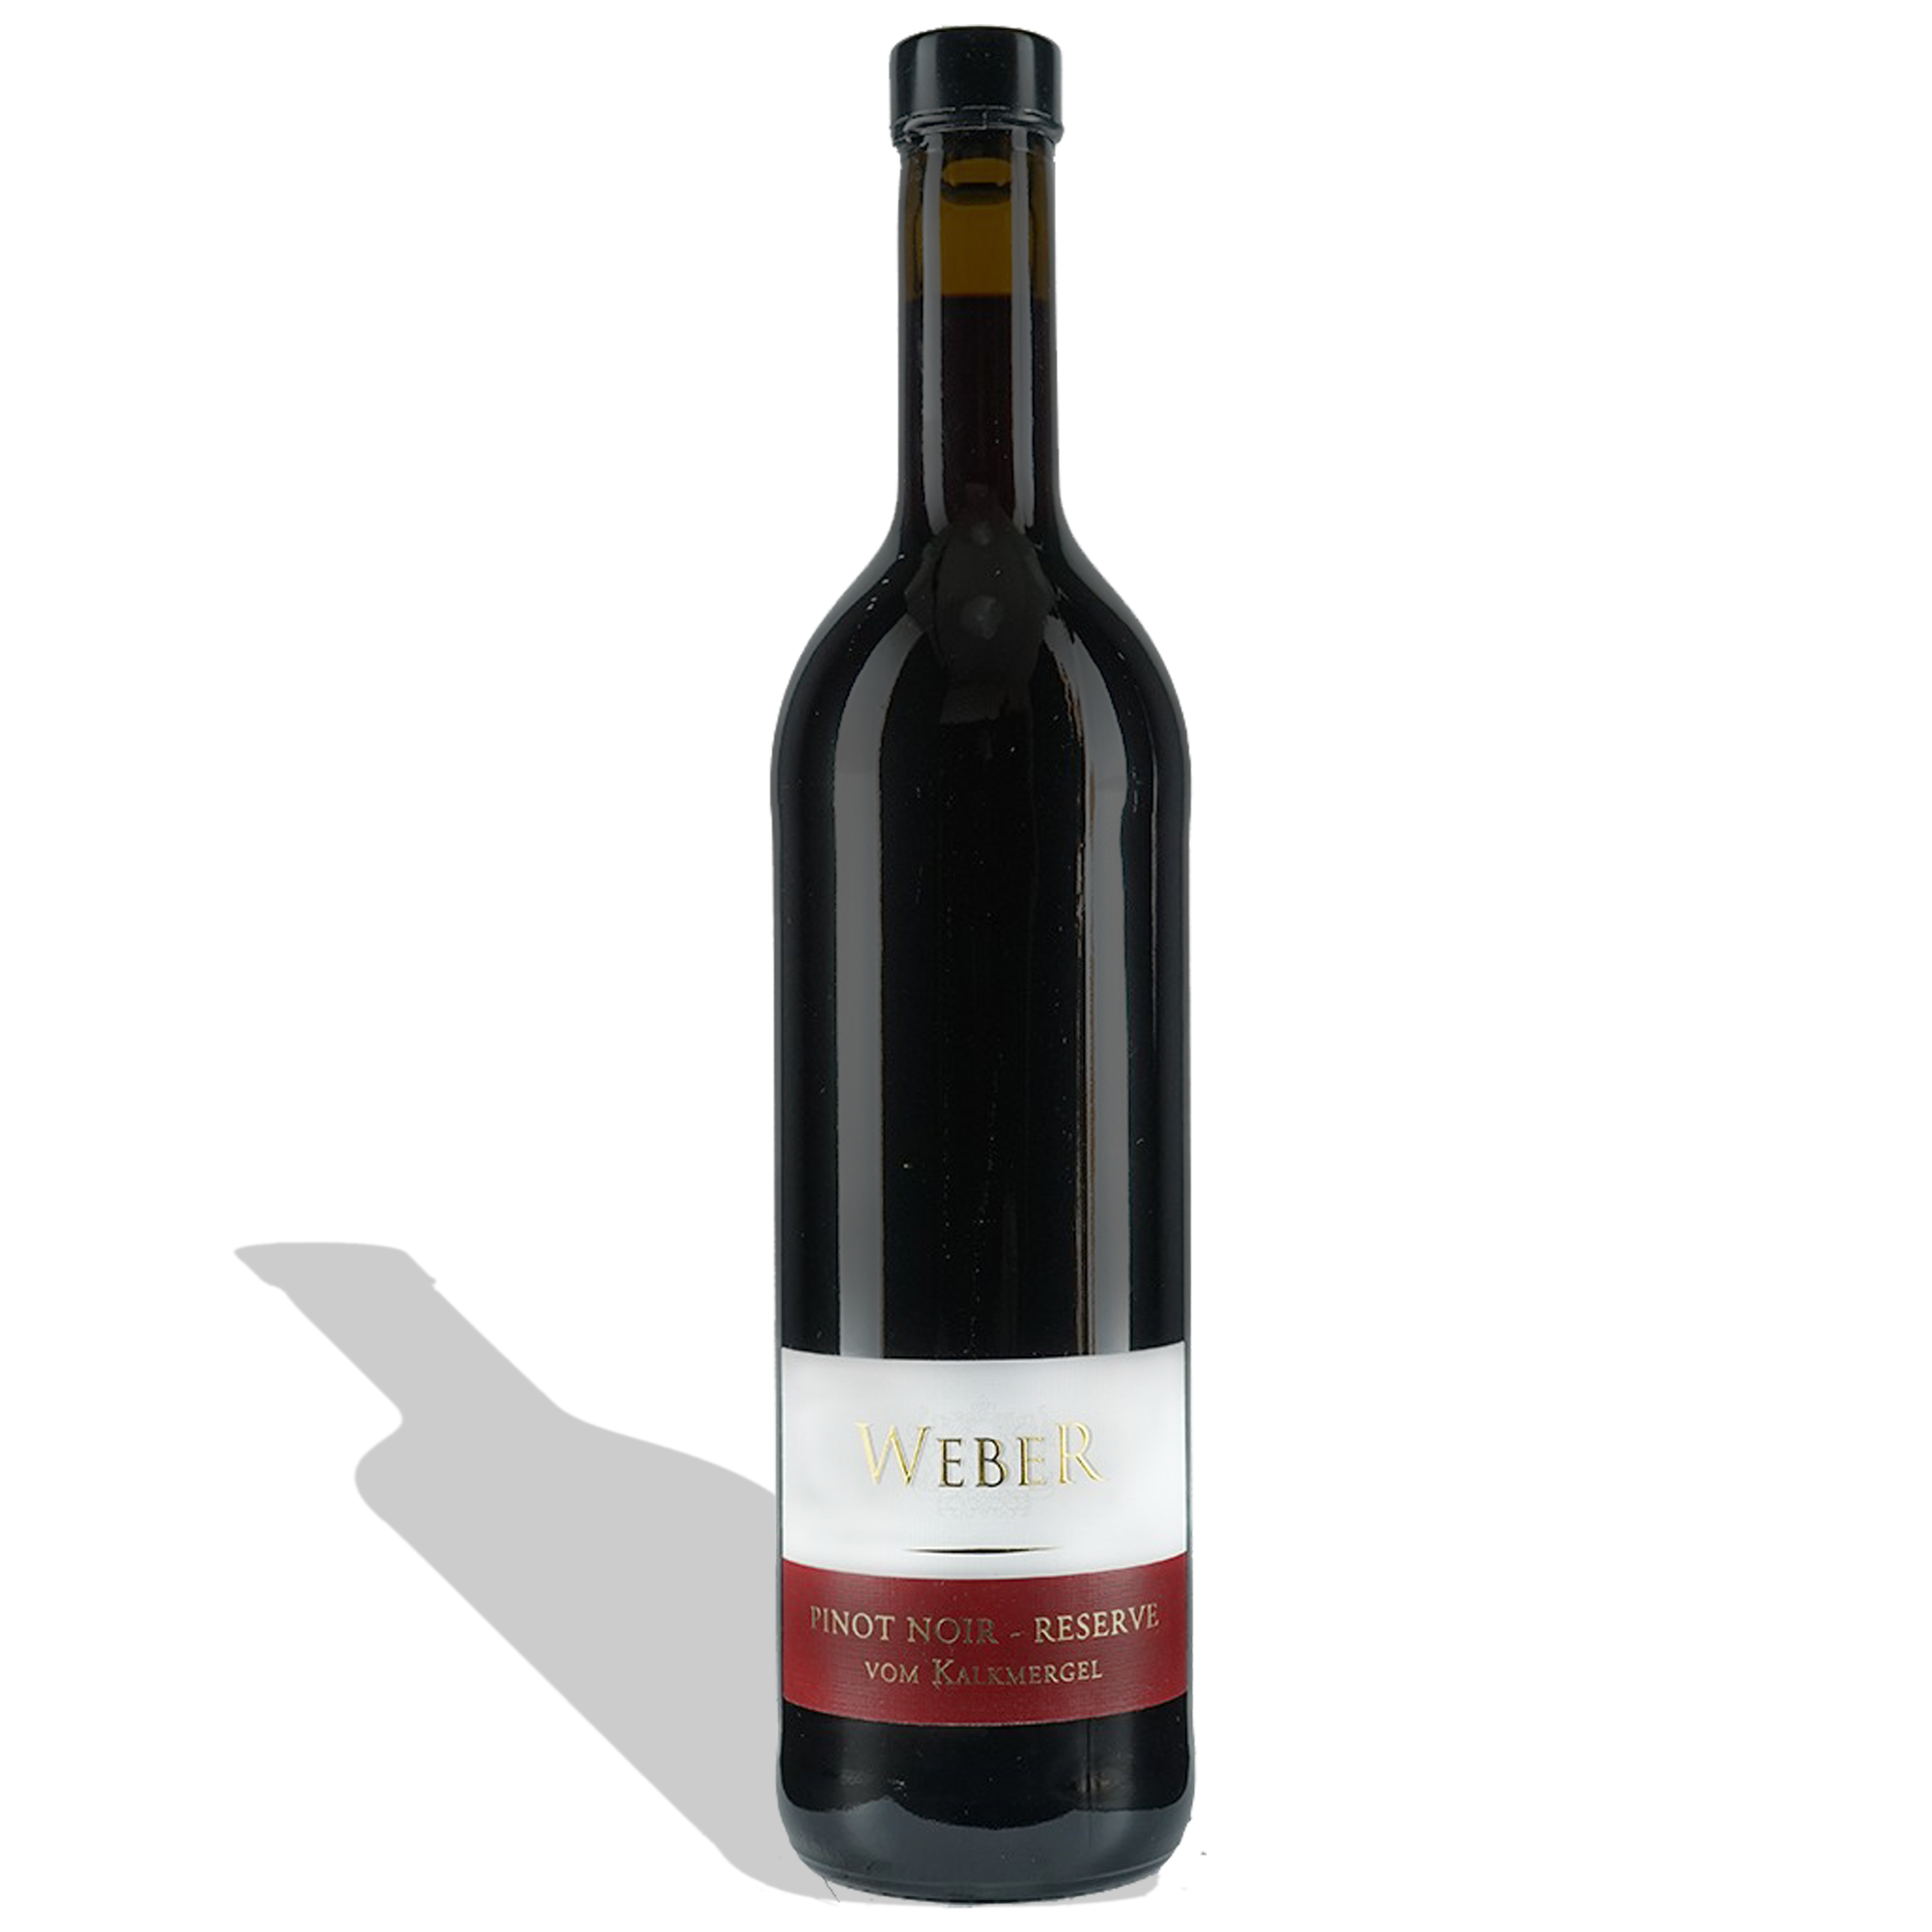 Weber Pinot Noir Reserve vom Kalkmergel 